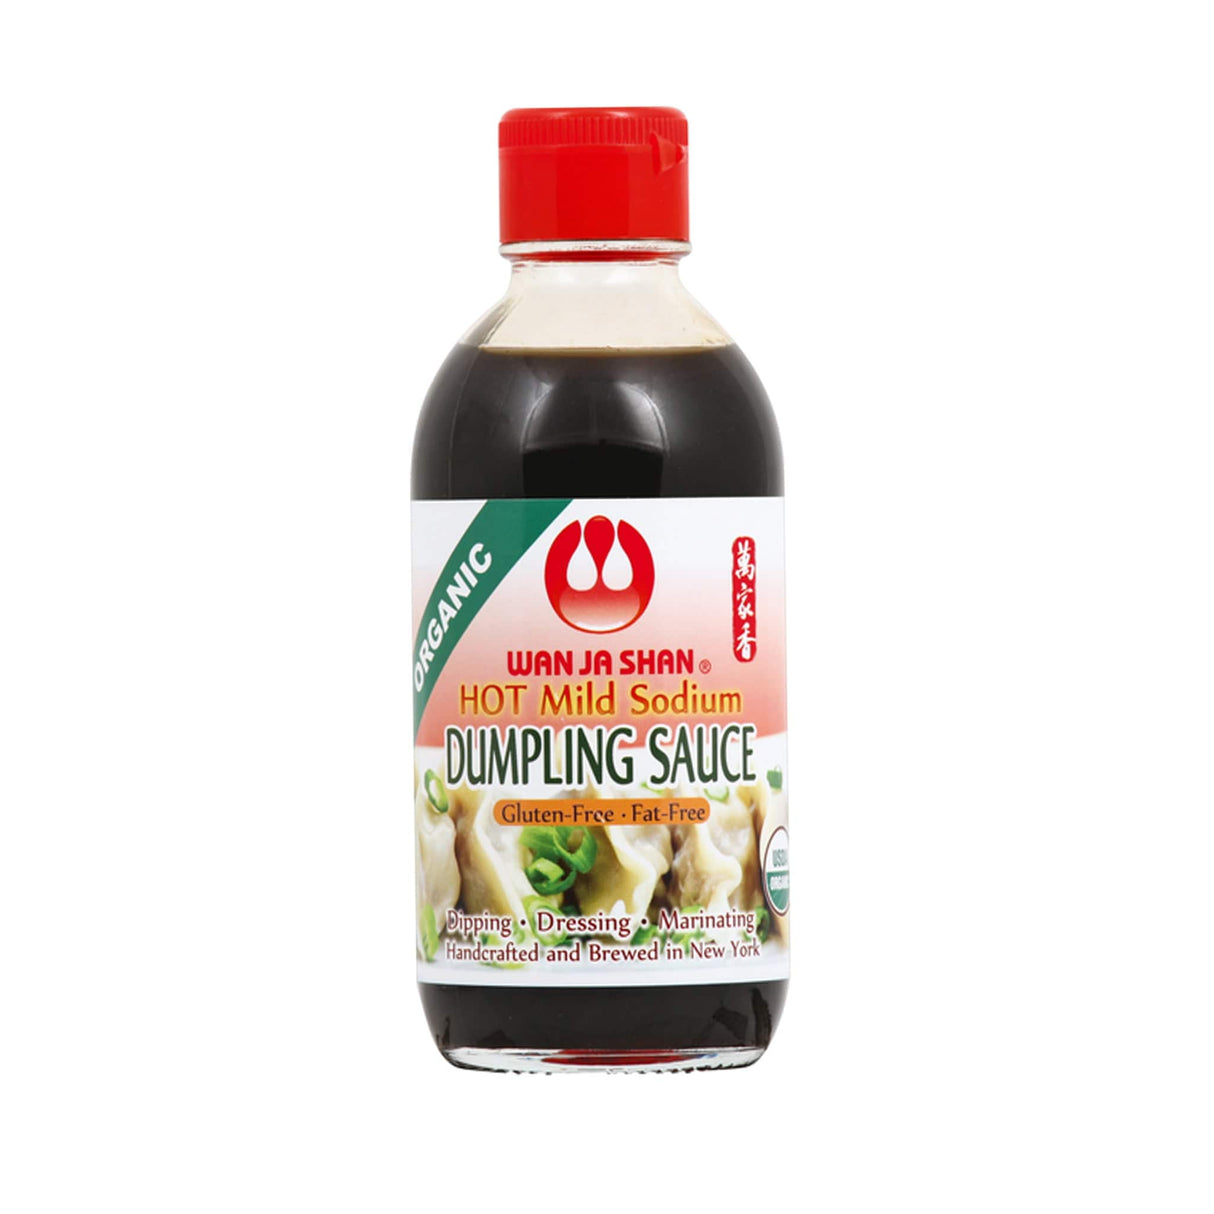 Wan Ja Shan Organic Hot Mild Sodium Dumpling Sauce